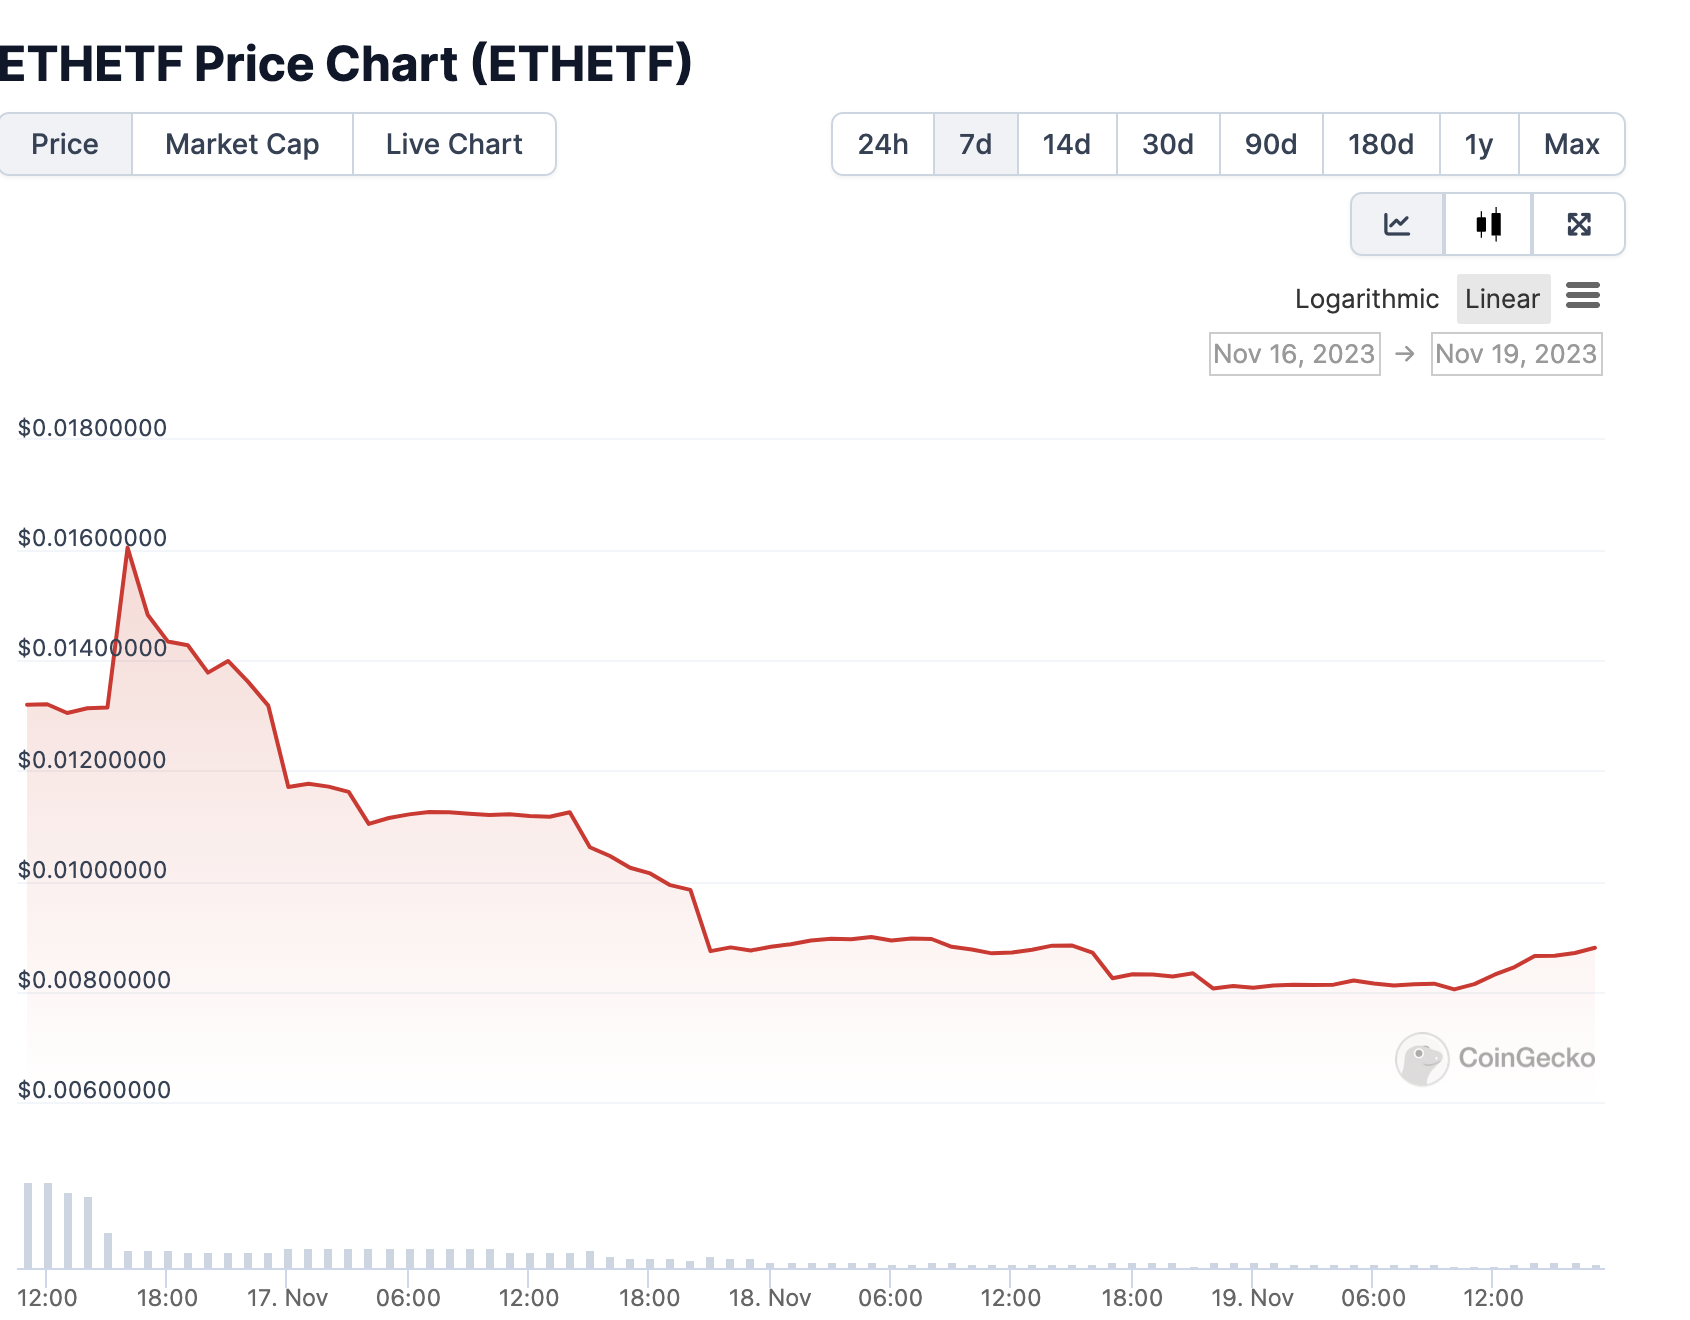 Изменение цены ETHETF с момента запуска. Источник: Сoingecko